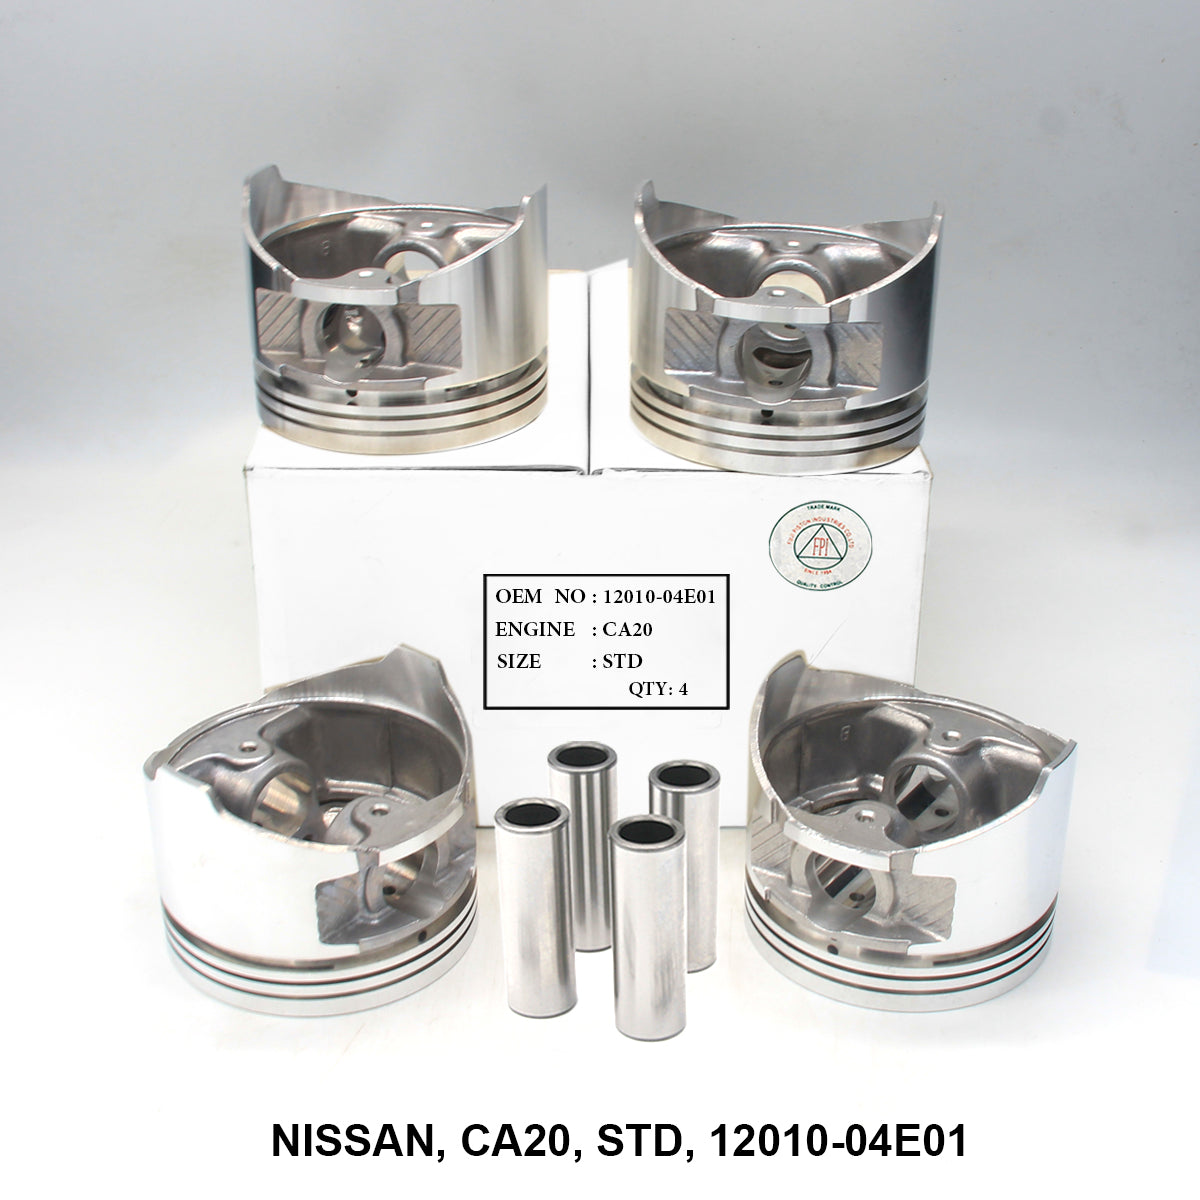 Piston W/Pin, FPI, CA20, STD, 12010-04E01 (001647)